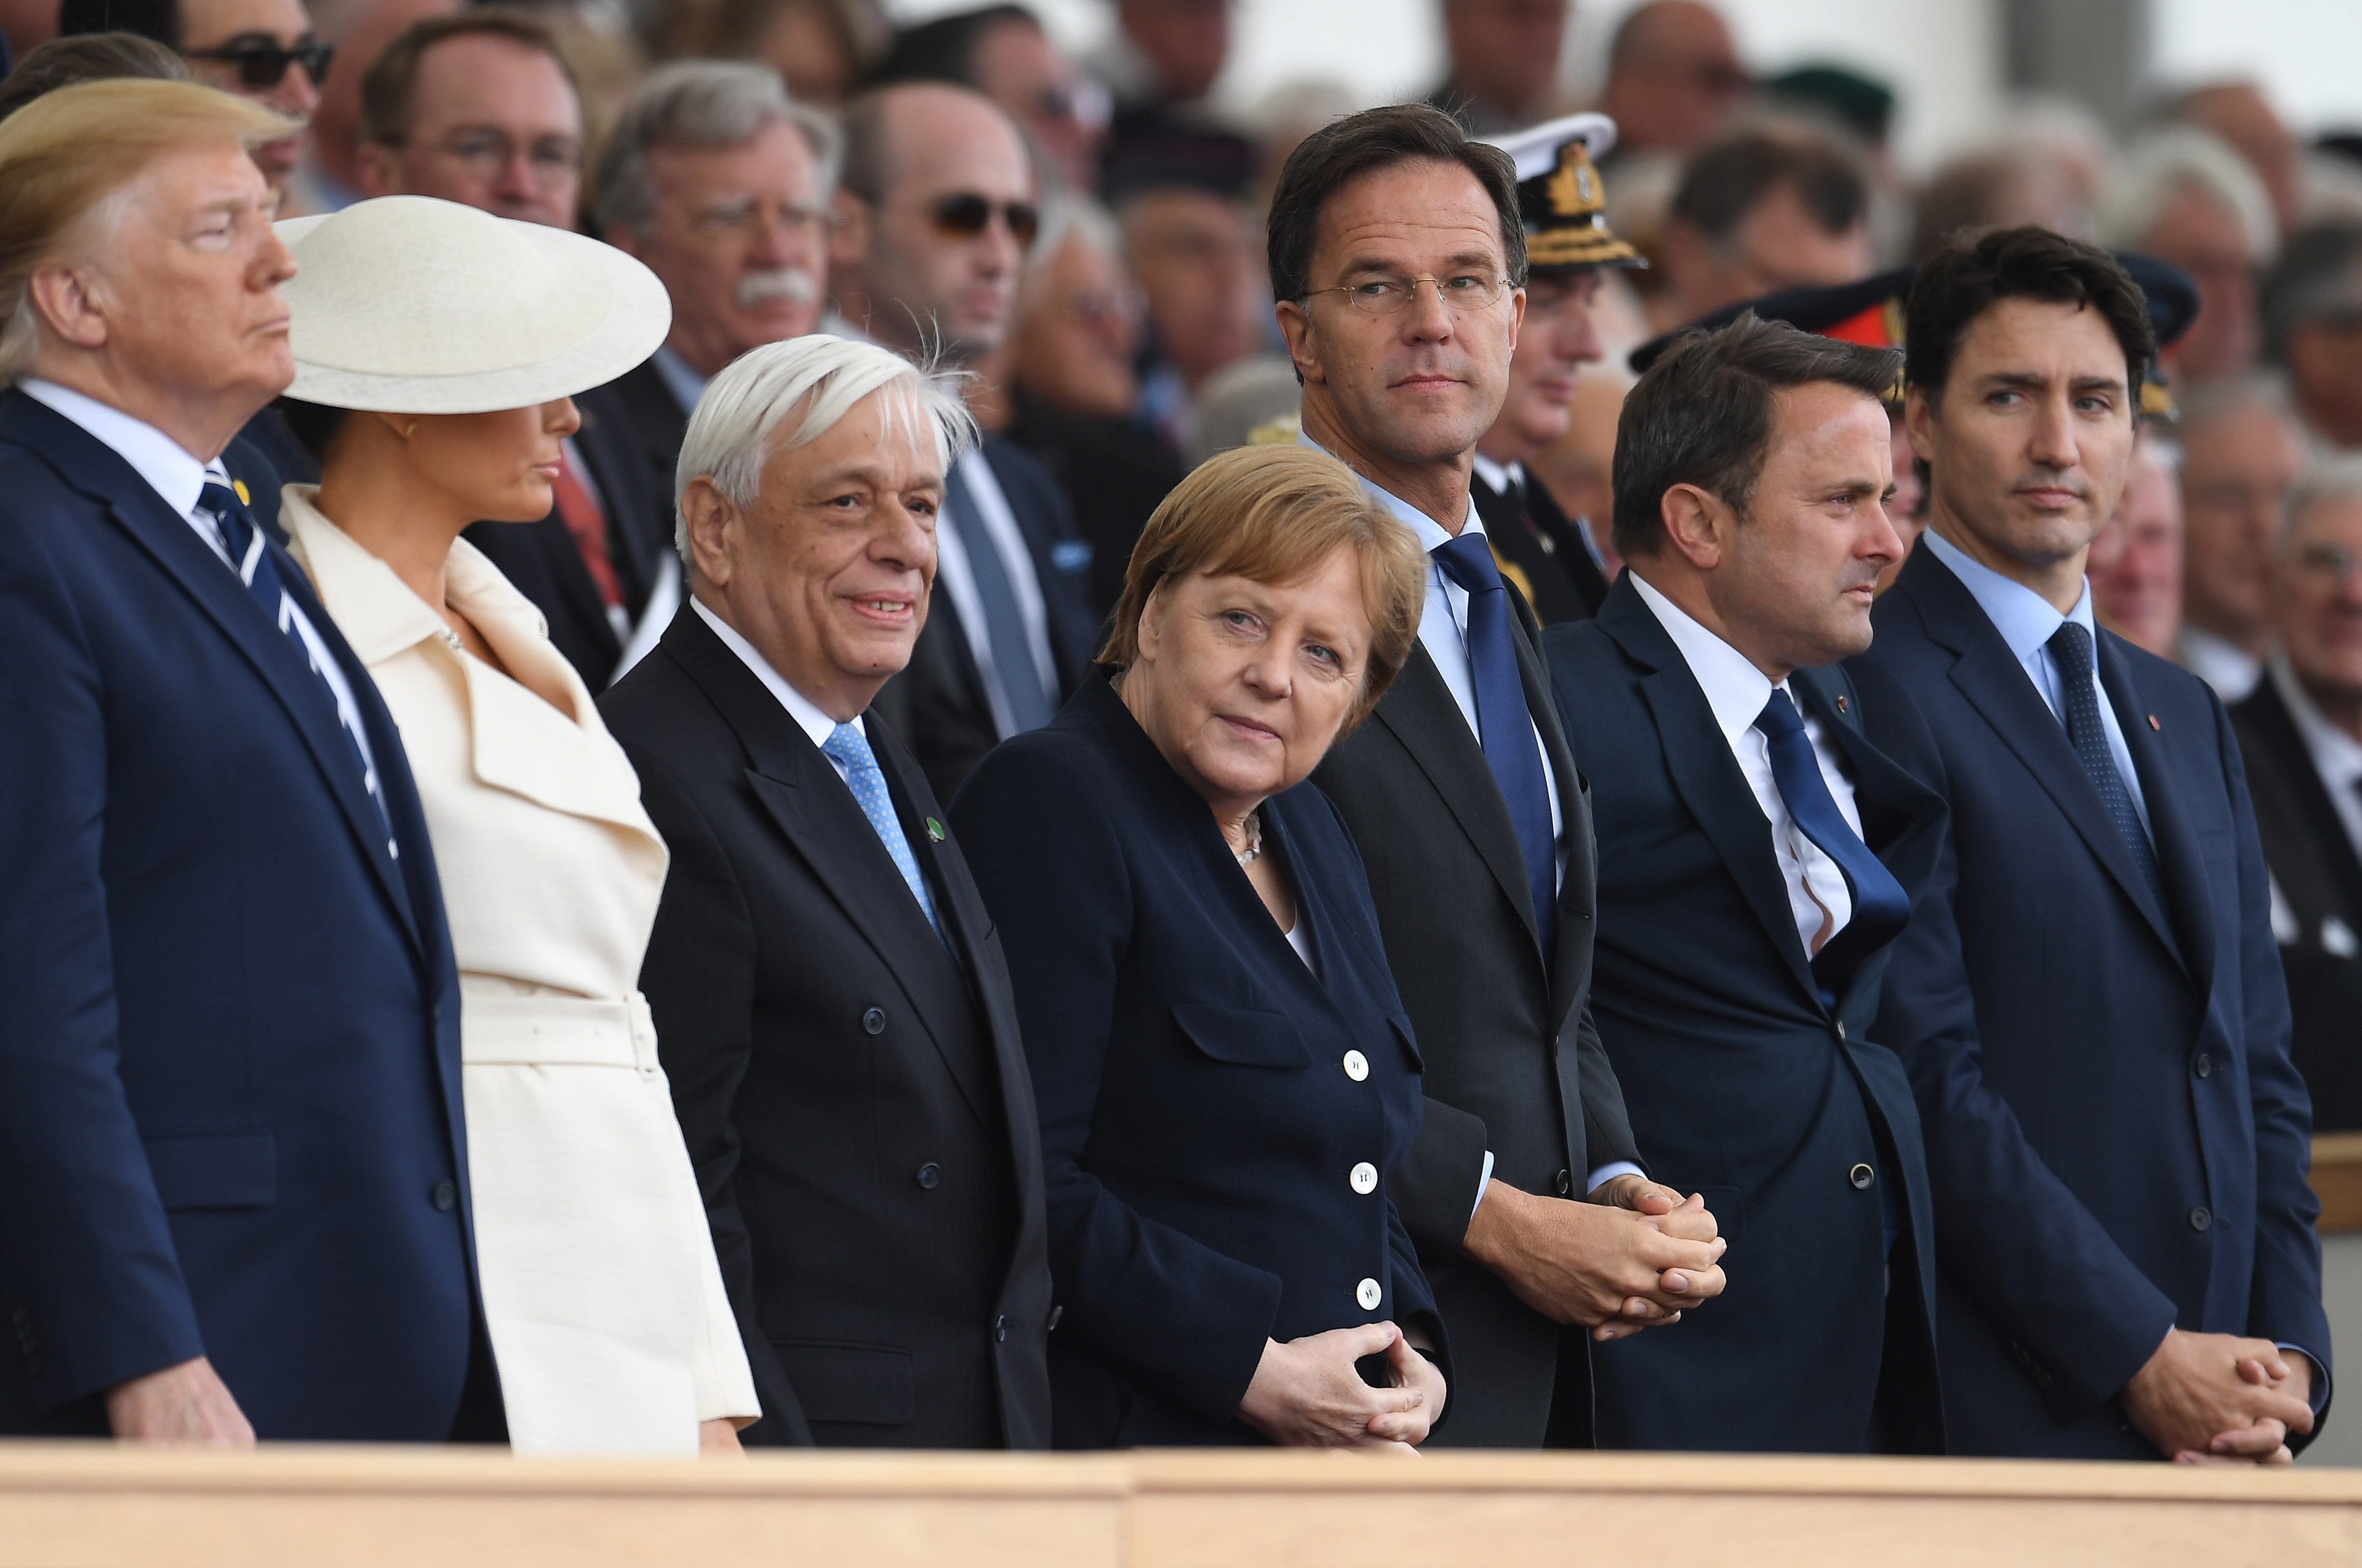 La gran lección de Merkel en la conmemoración del desembarque de Normandia